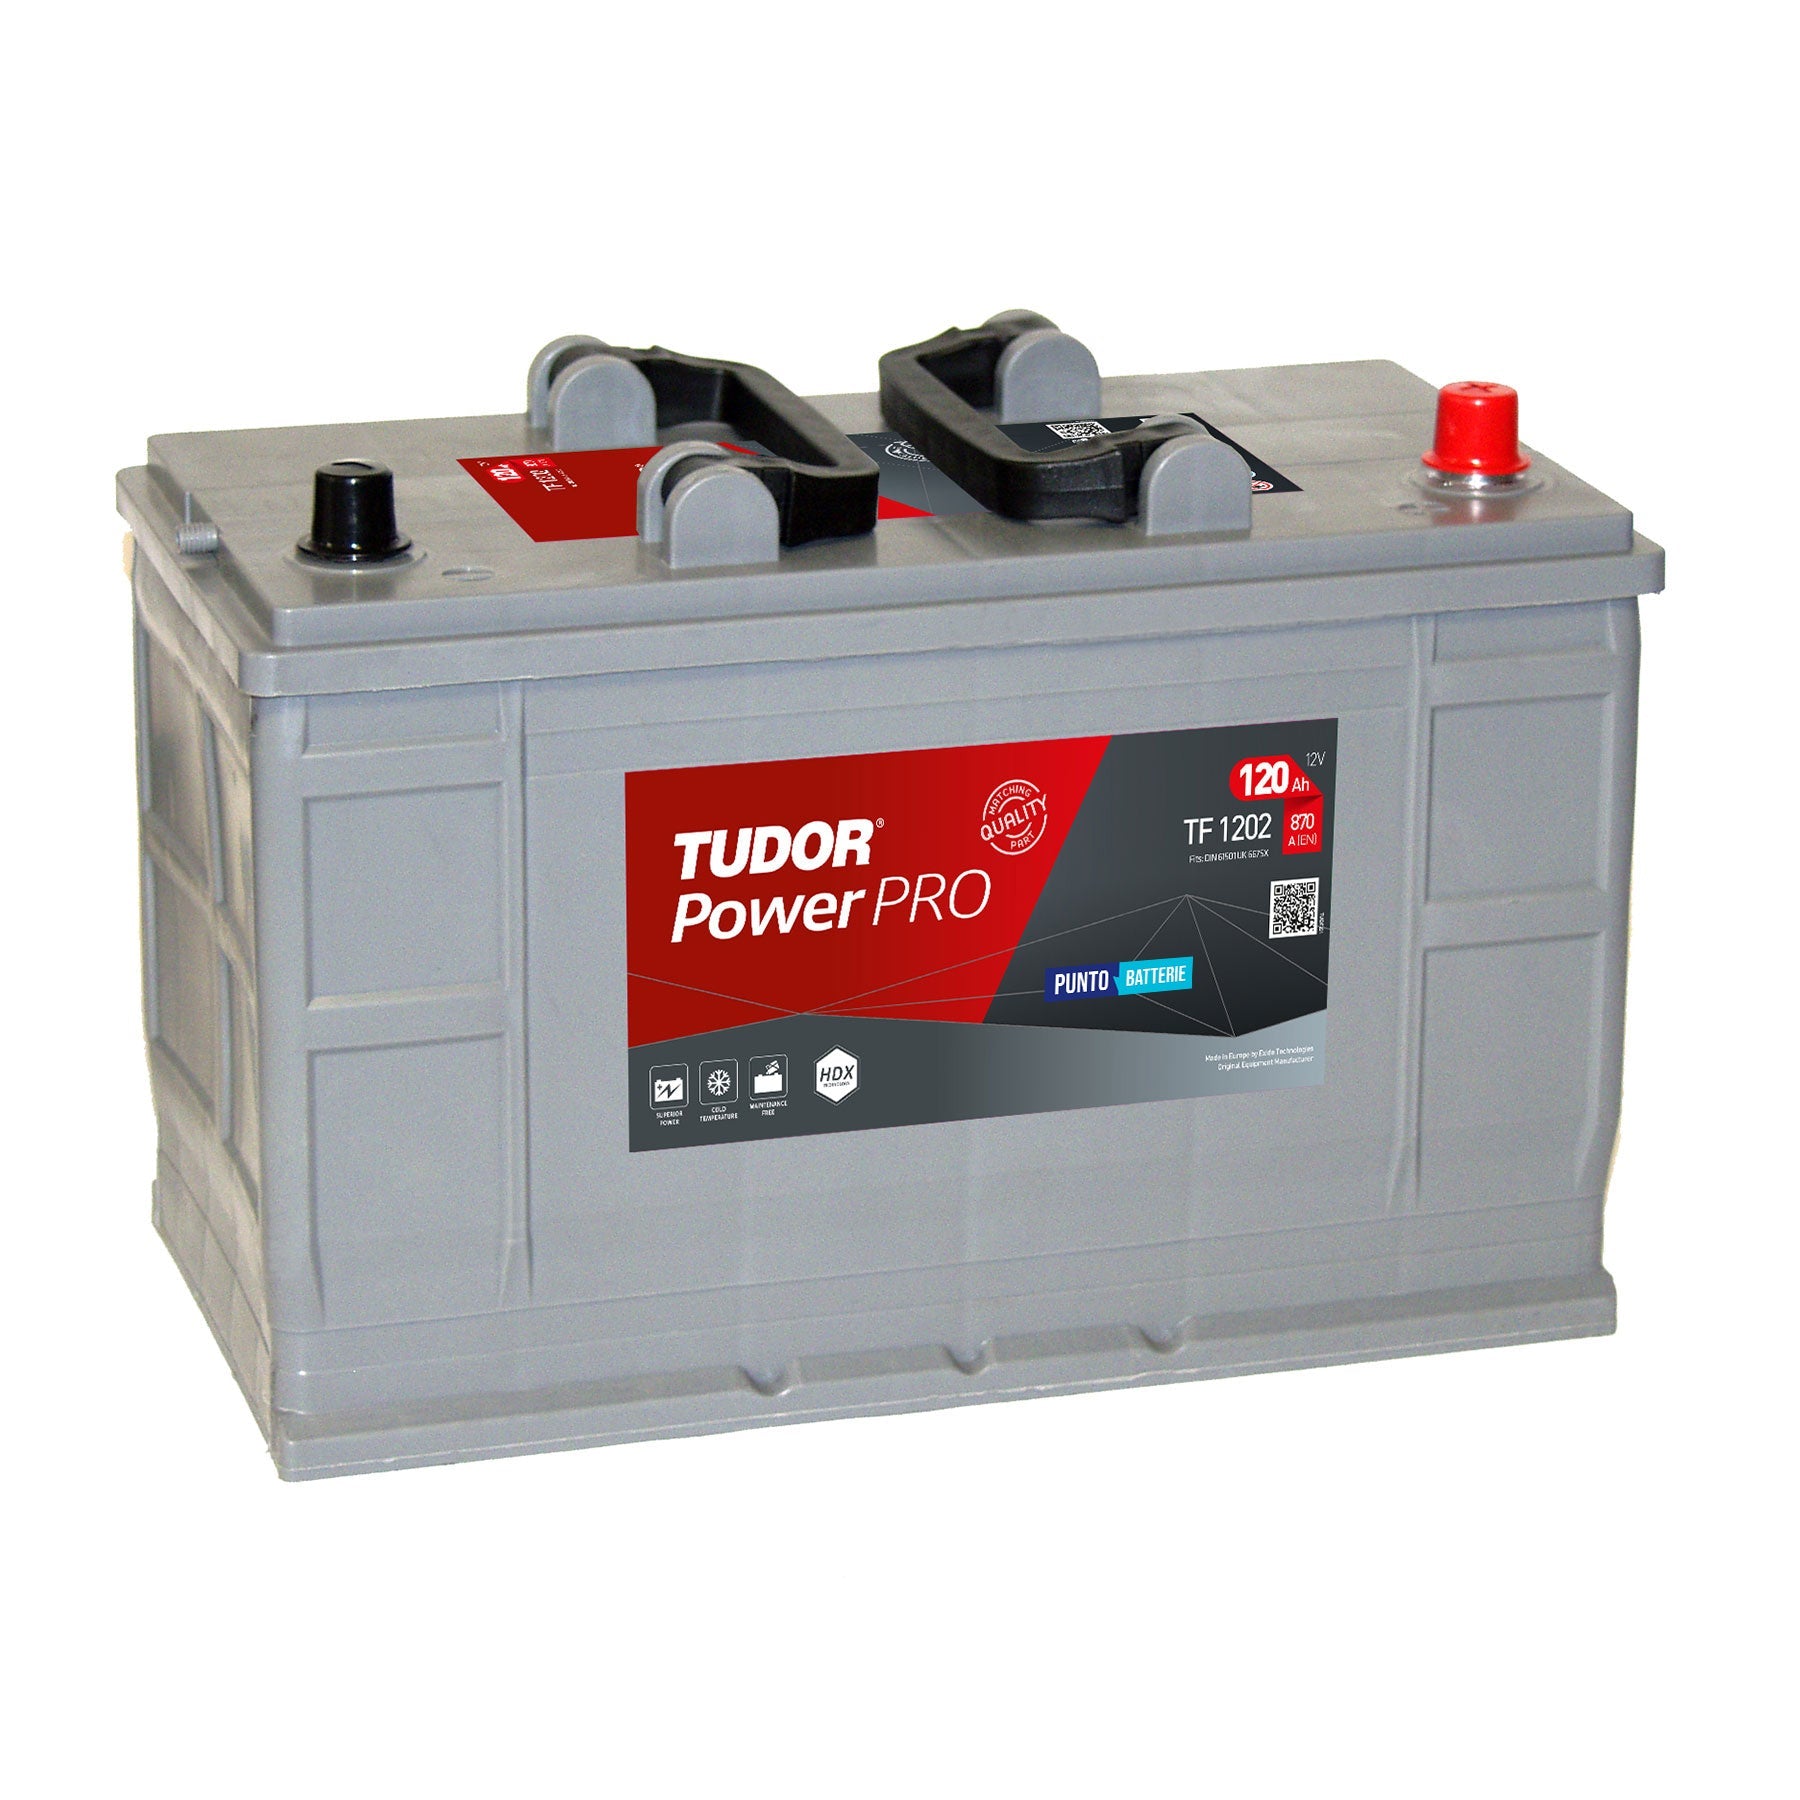 Batteria originale Tudor Power PRO TF1202, dimensioni 349 x 175 x 235, polo positivo a destra, 12 volt, 120 amperora, 870 ampere. Batteria per camion e veicoli pesanti.